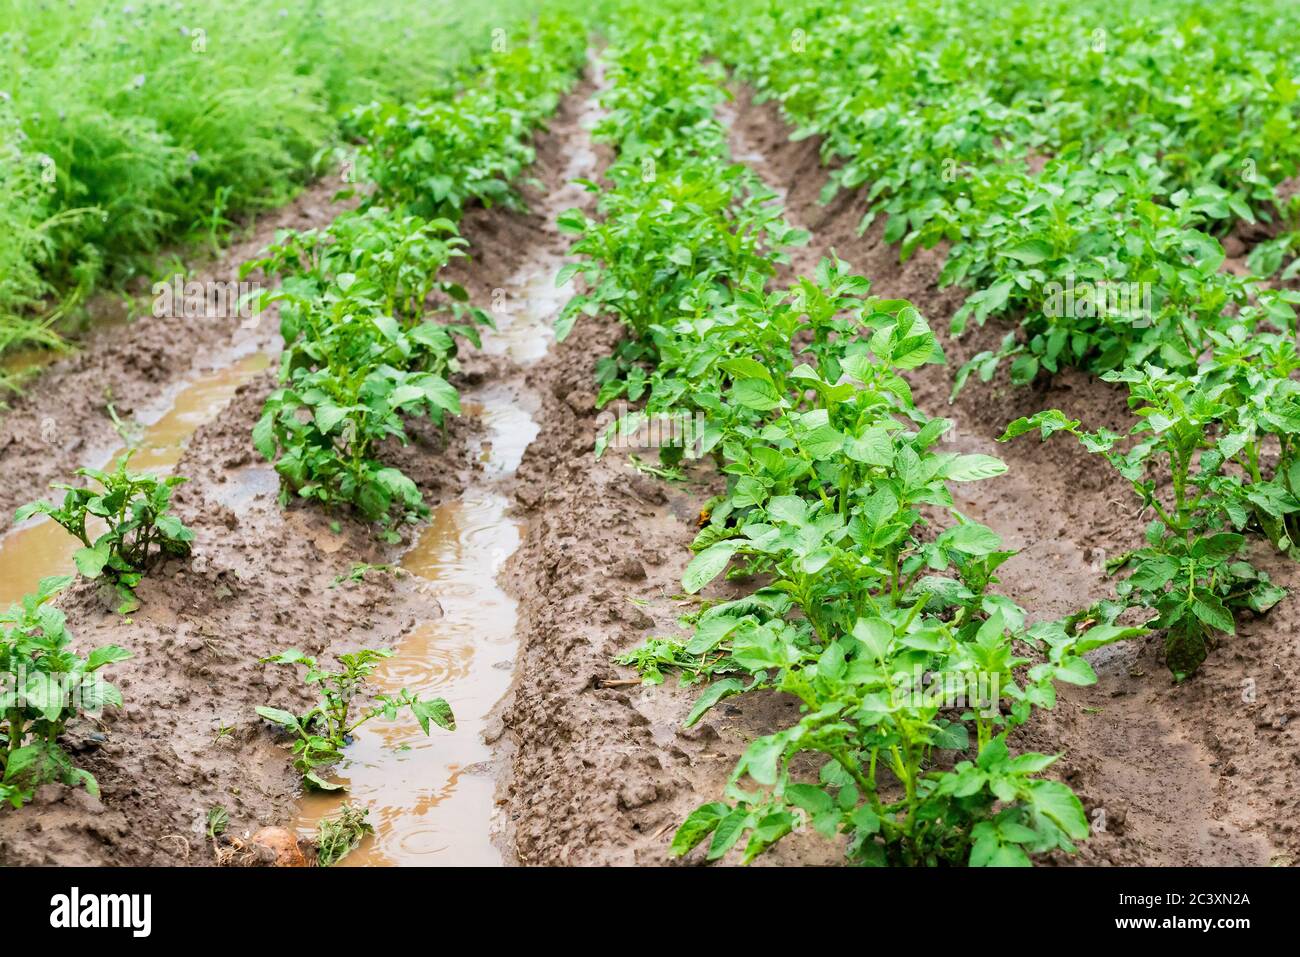 Patatas en surcos con agua después de la lluvia intensa. Desastre agrícola. Inundación. Foto de alta calidad Foto de stock